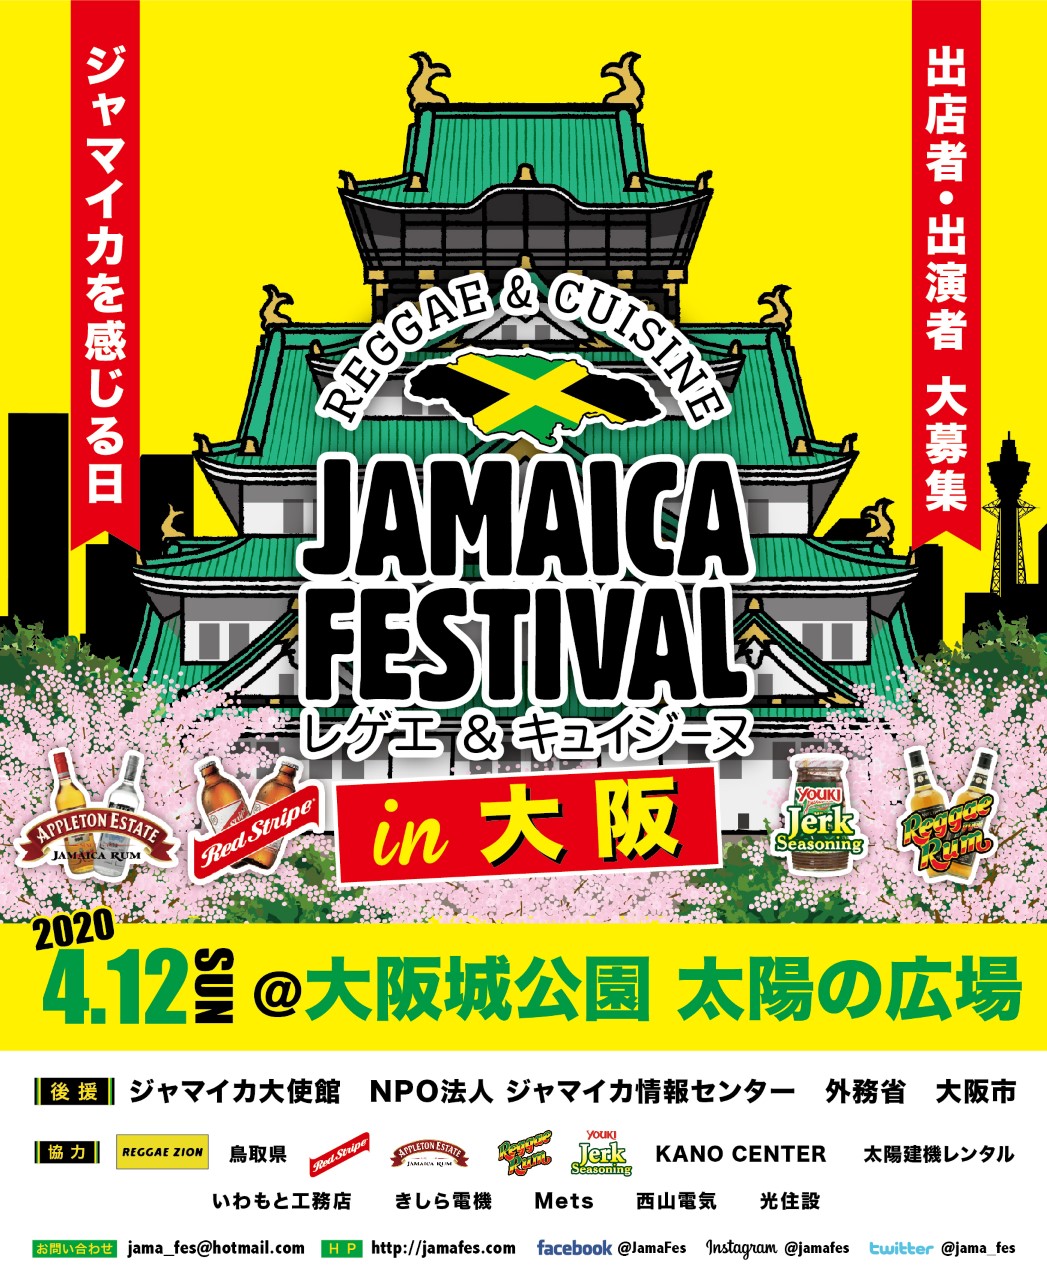 【イベント情報】2020年4月12日(日)Jamaica Festival@大阪城公園(太陽の広場)